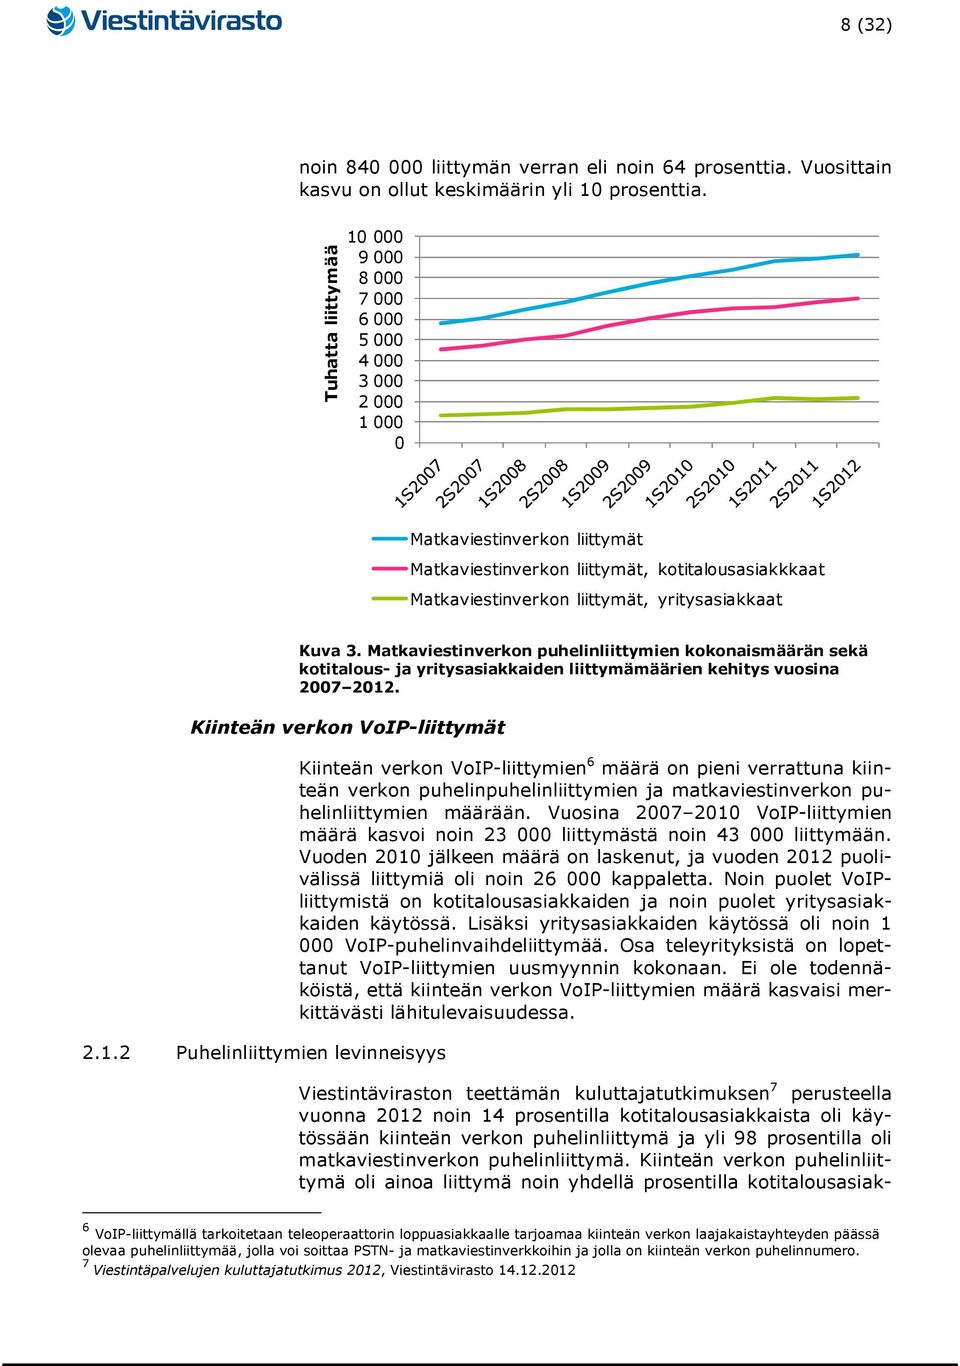 Kuva 3. Matkaviestinverkon puhelinliittymien kokonaismäärän sekä kotitalous- ja yritysasiakkaiden liittymämäärien kehitys vuosina 2007 2012